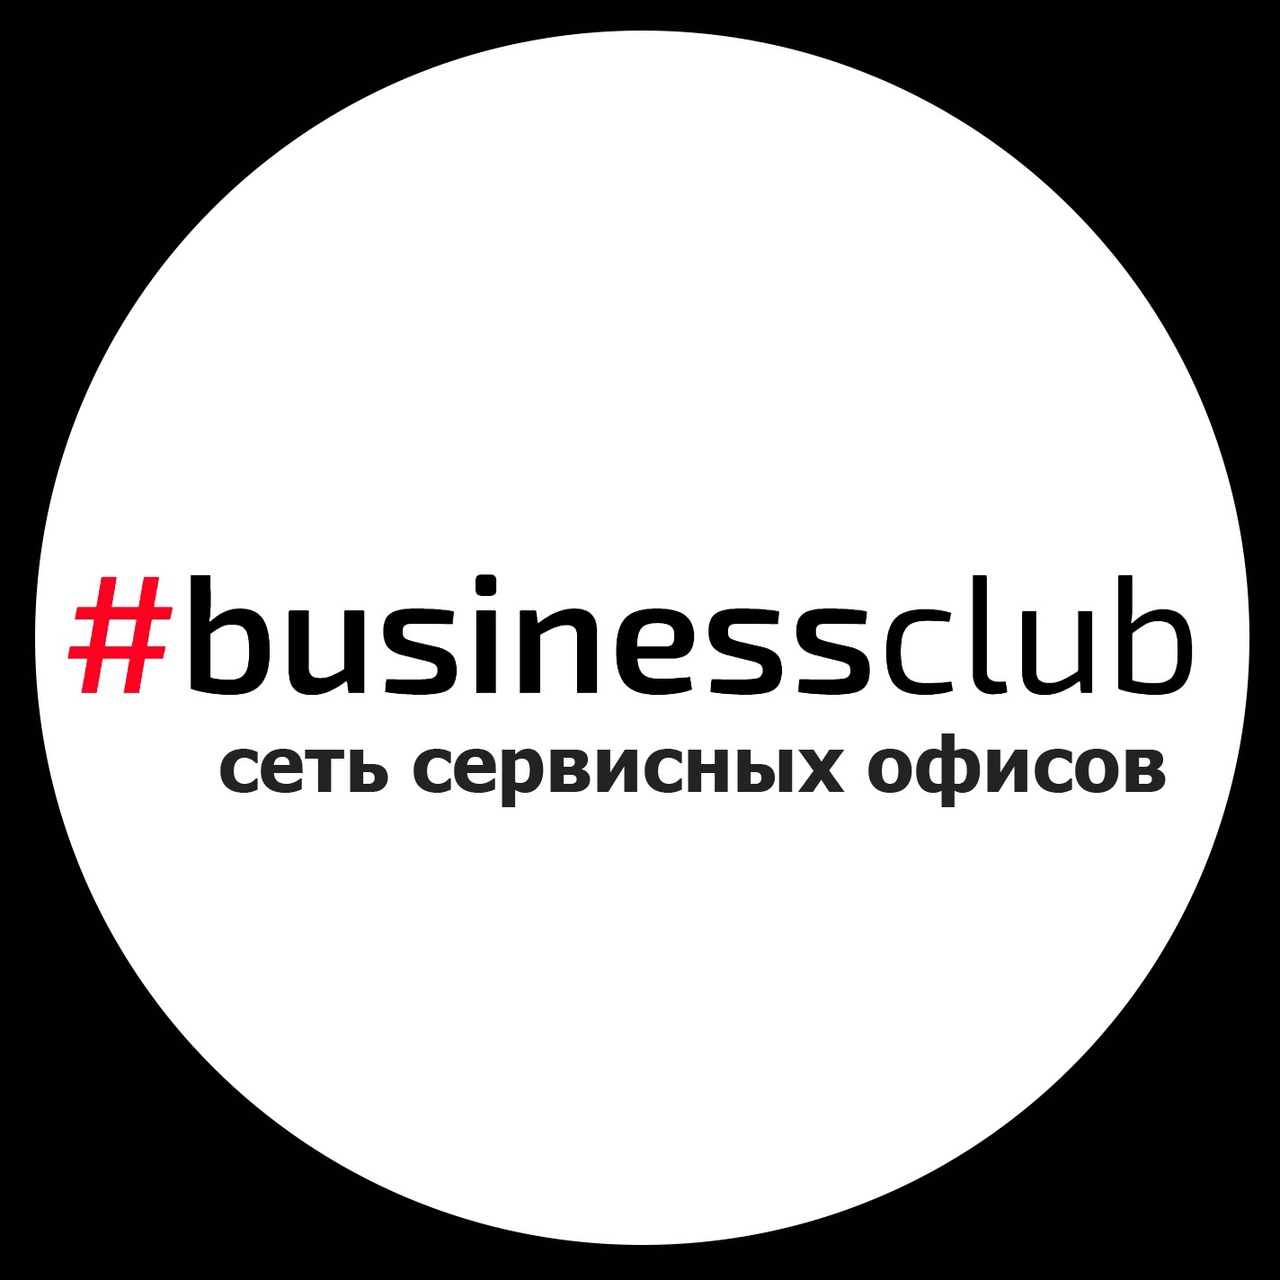 Businessclub